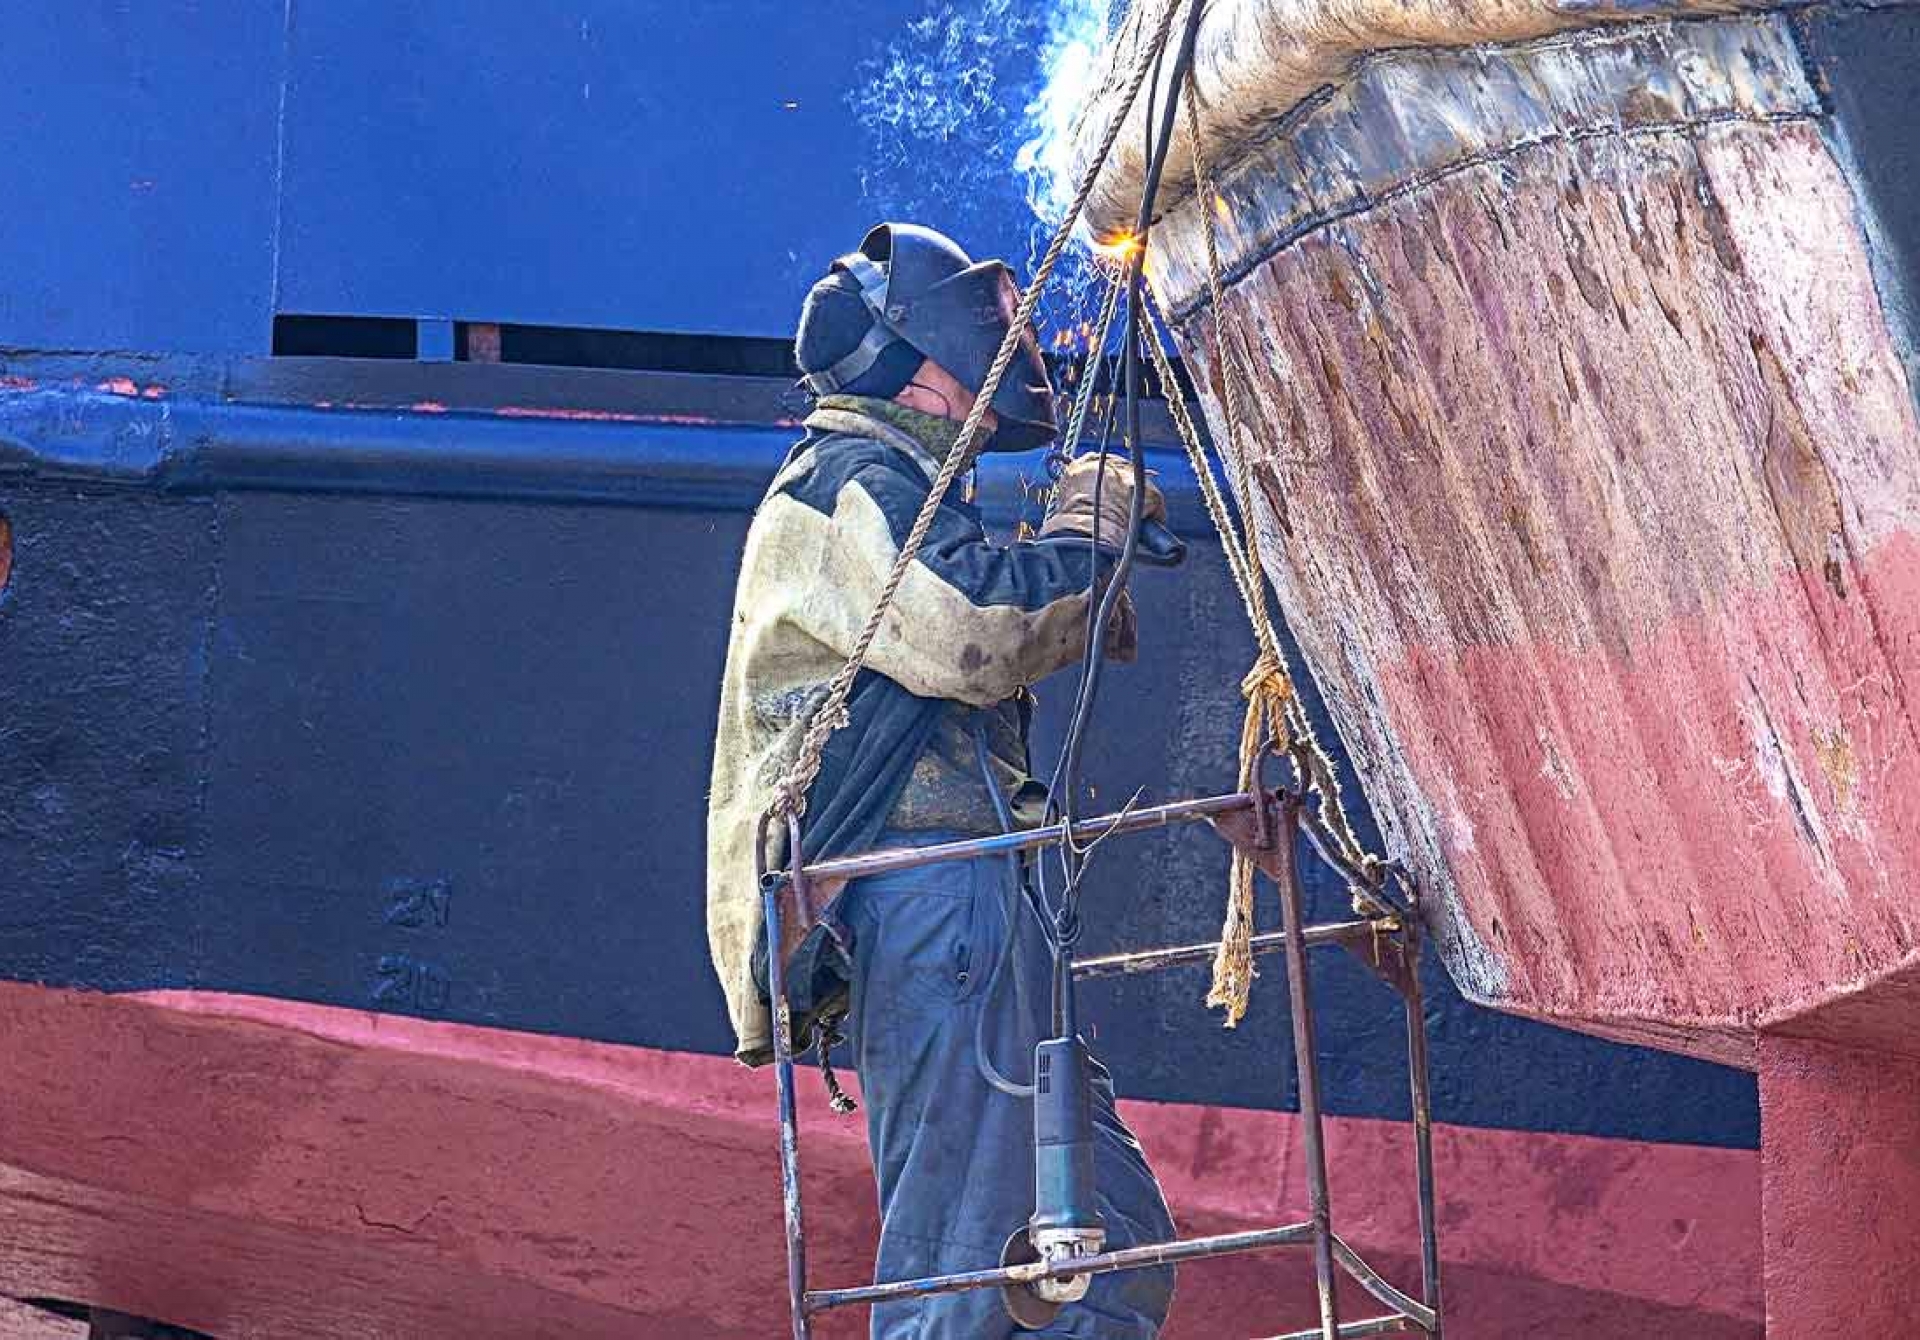 Servicio de Reparación de Barcos en Barcelona: Expertos en Soluciones y Mantenimiento de Embarcaciones